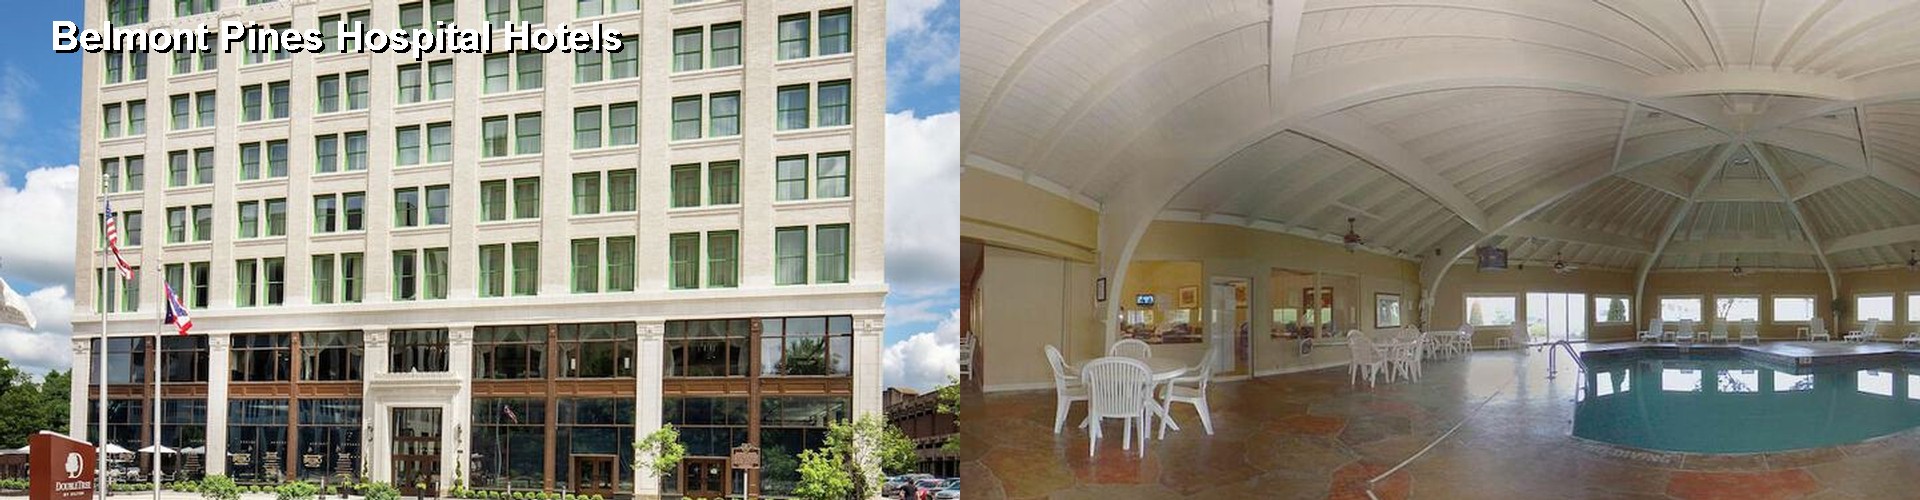 4 Best Hotels near Belmont Pines Hospital